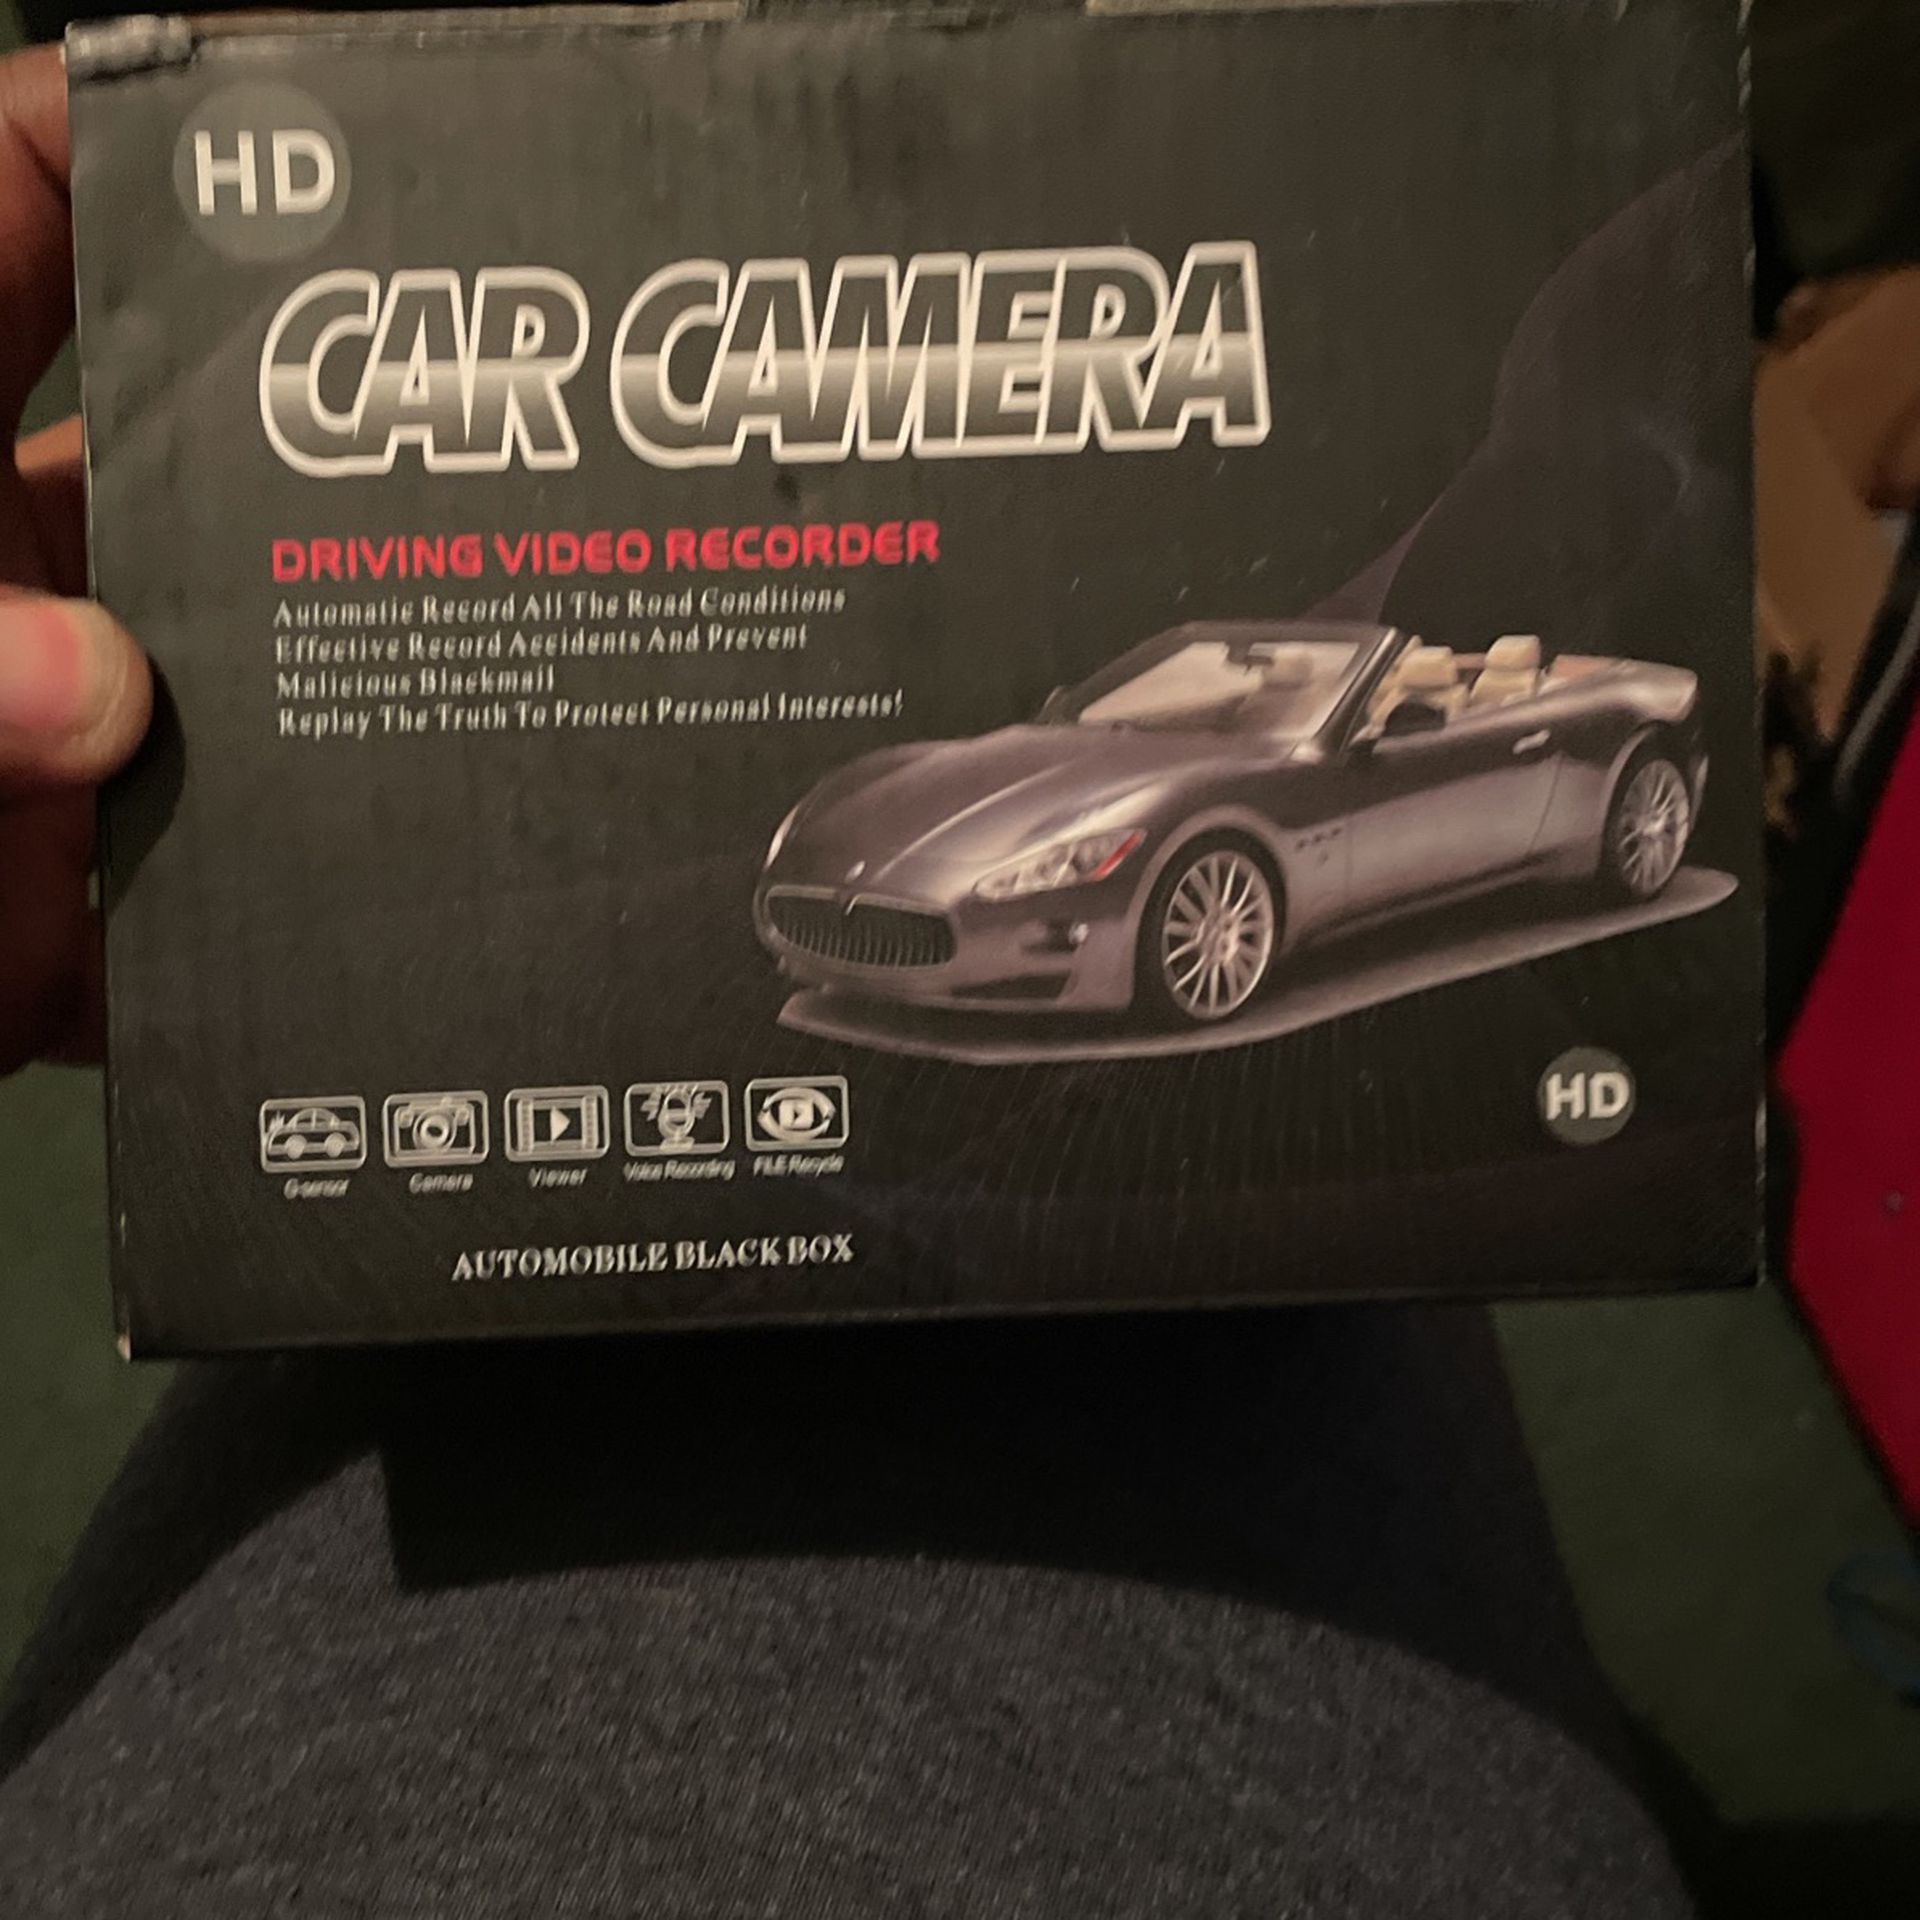 HD Car Camera And Recorder